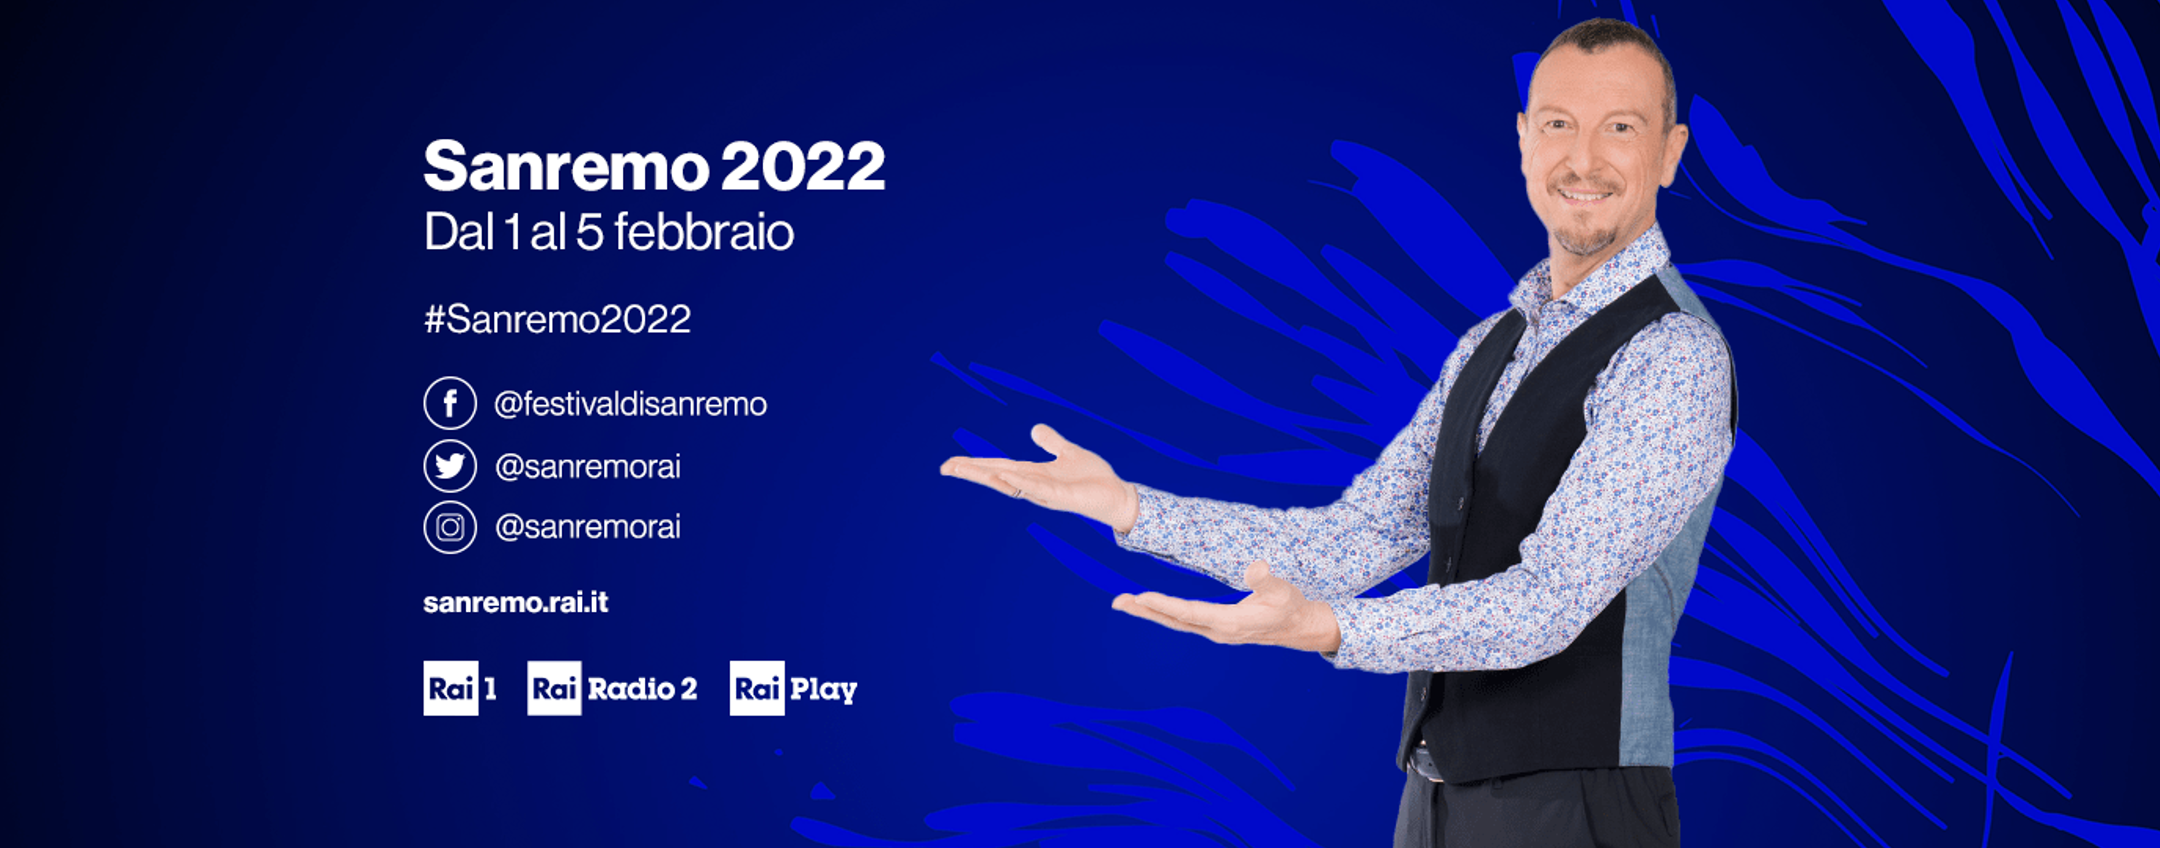 Sanremo 2022: dove vedere la replica delle puntate?